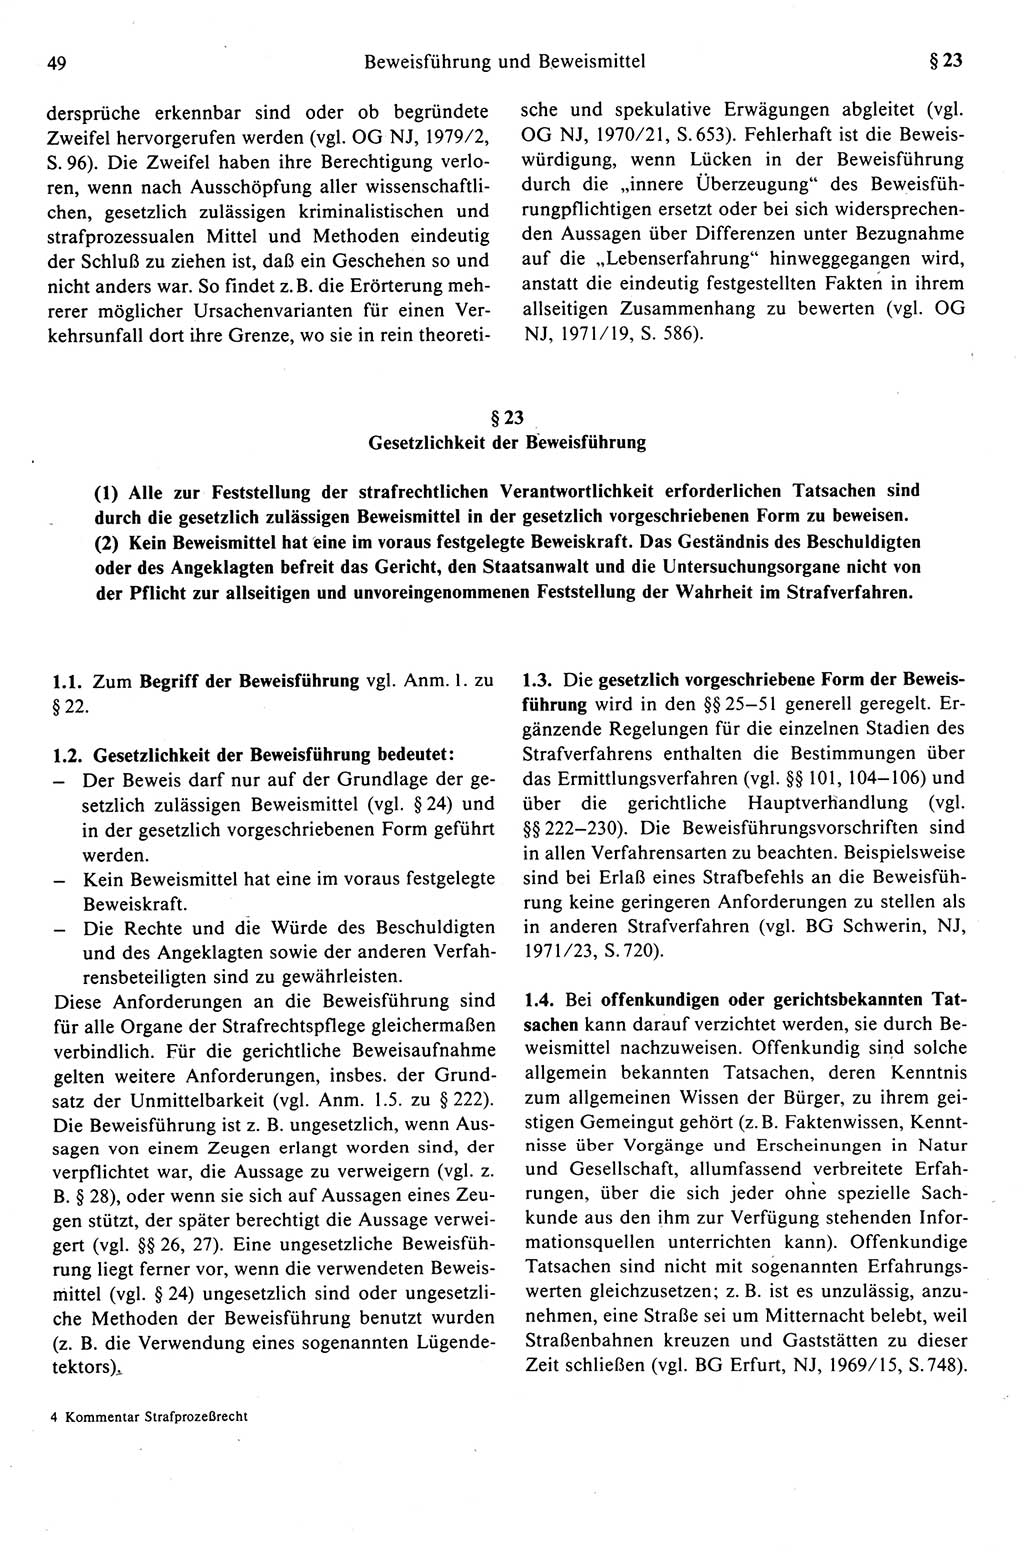 Strafprozeßrecht der DDR (Deutsche Demokratische Republik), Kommentar zur Strafprozeßordnung (StPO) 1989, Seite 49 (Strafprozeßr. DDR Komm. StPO 1989, S. 49)